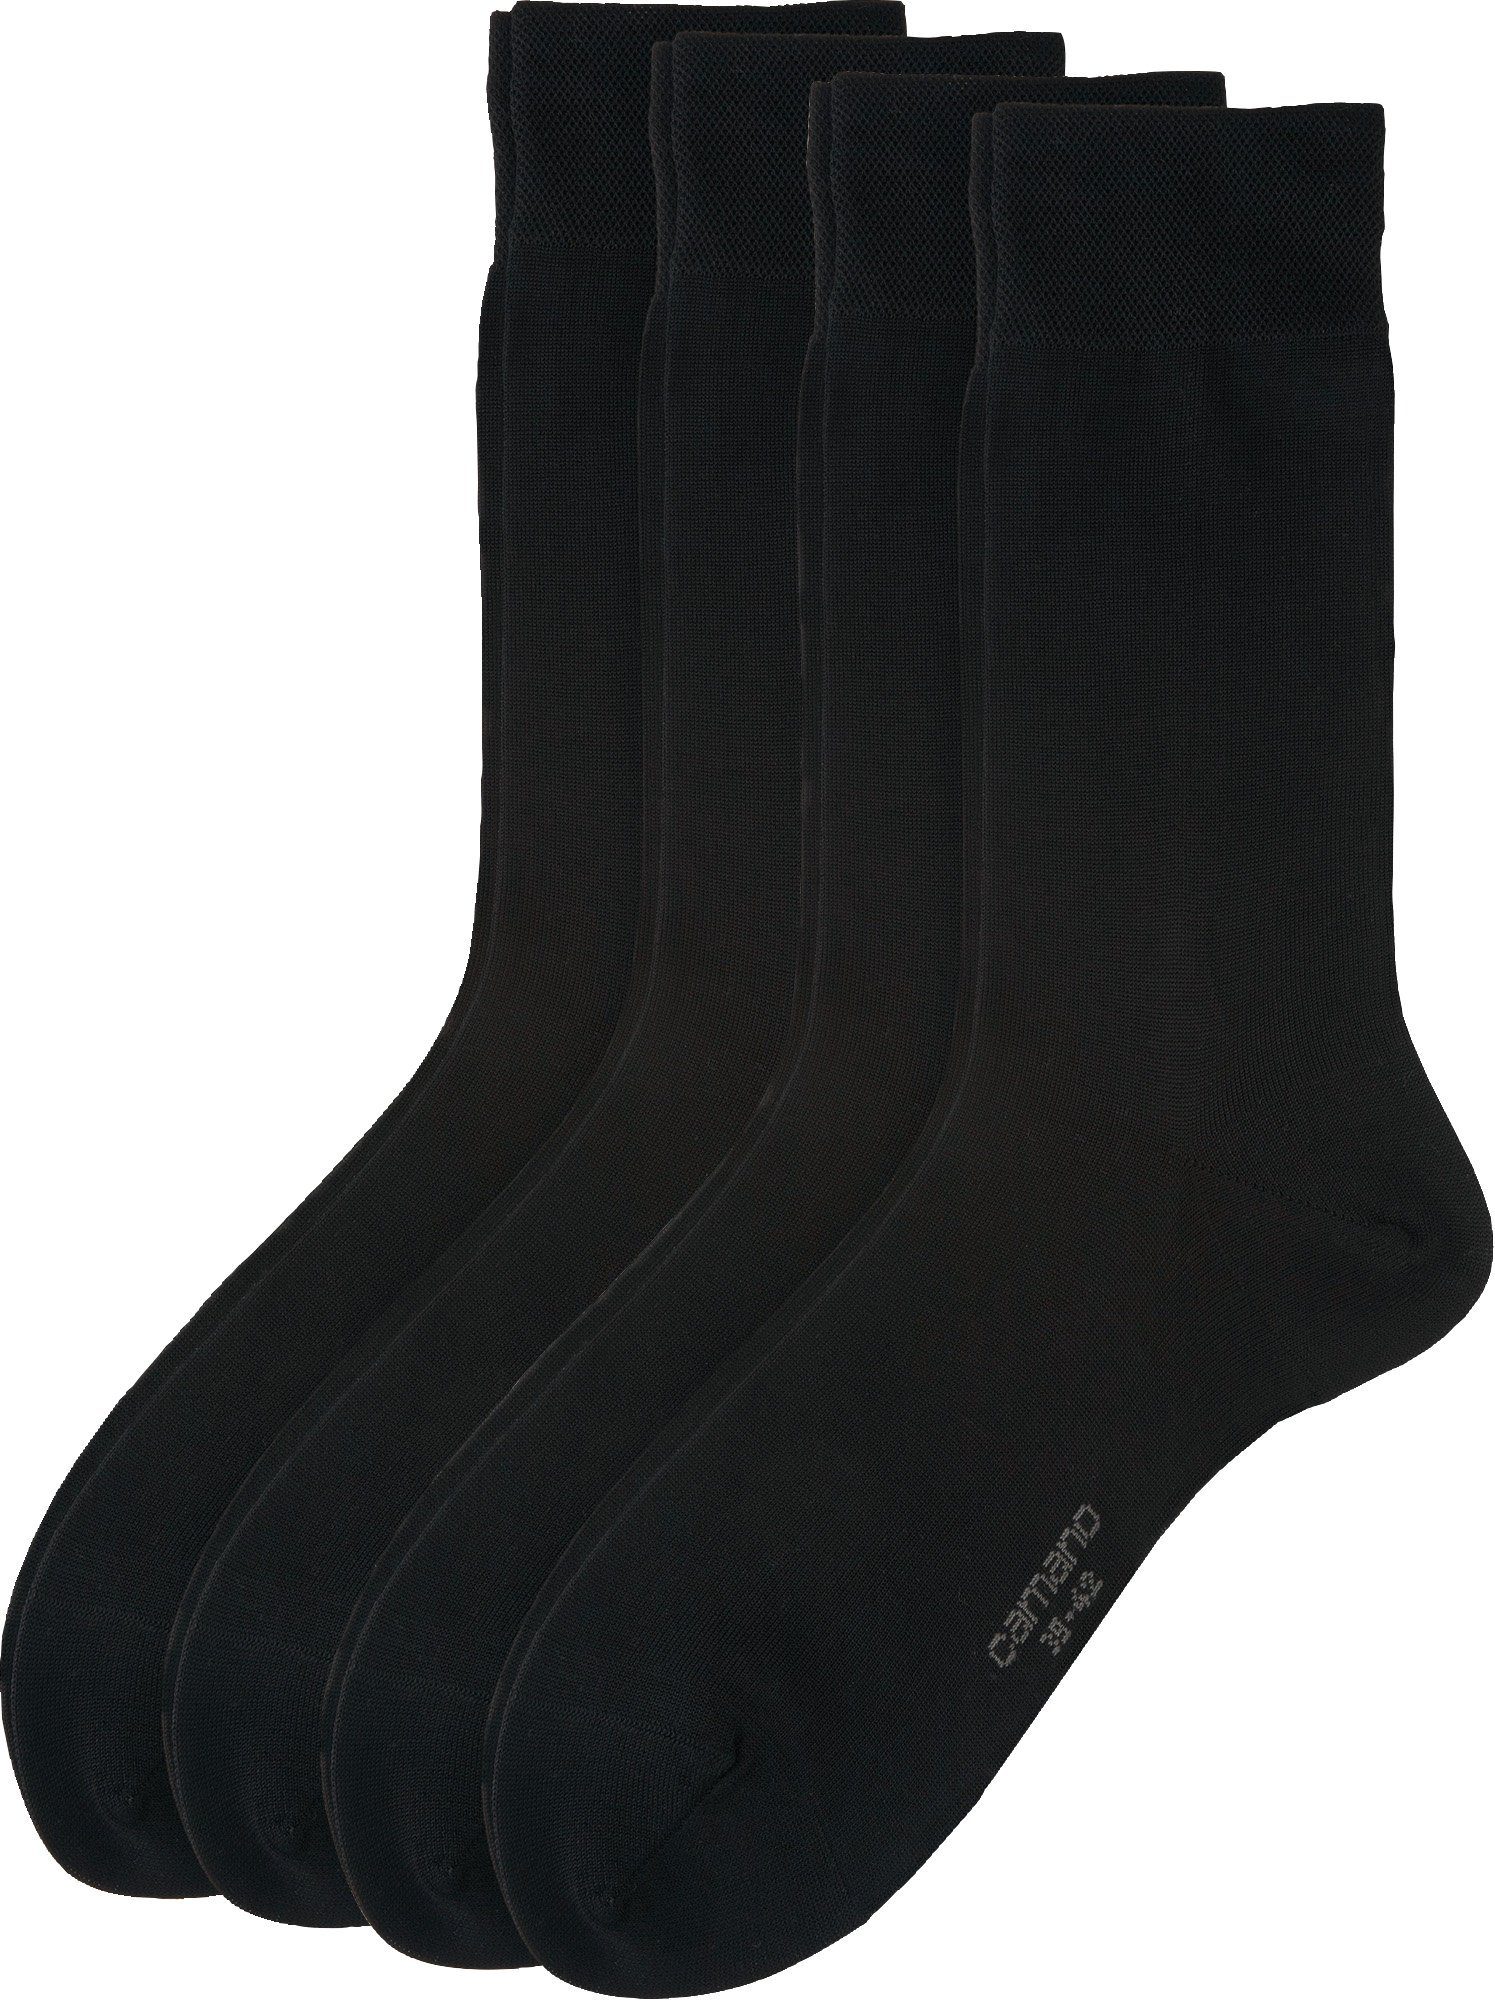 Camano Socken Herren Business-Socken 4 Paar Uni schwarz | Socken